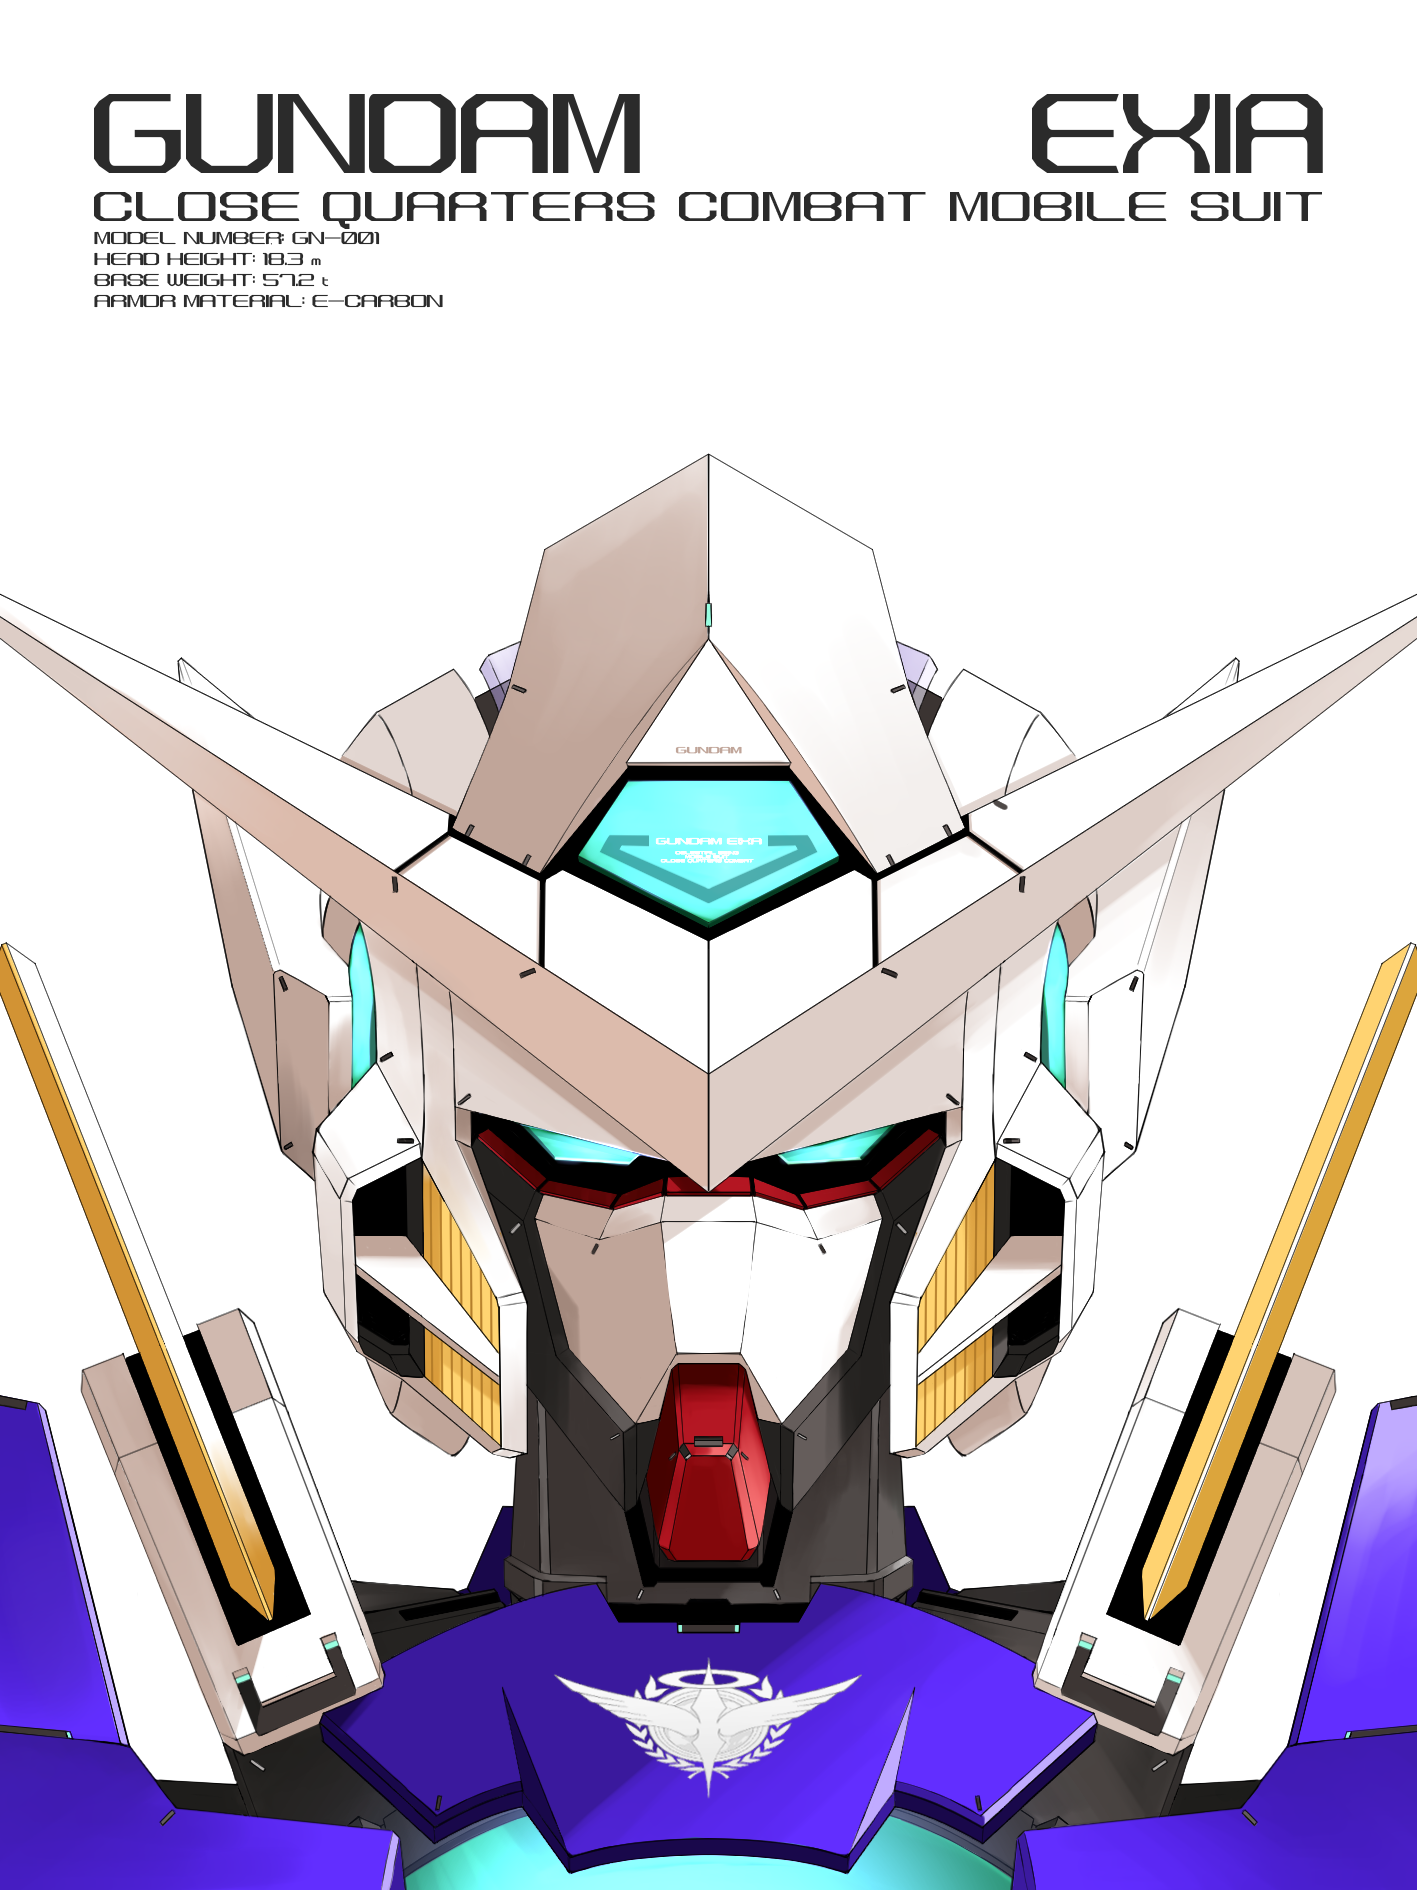 Anime 1417x1890 anime mechs Super Robot Taisen Gundam Mobile Suit Gundam 00 Gundam Exia artwork digital art fan art